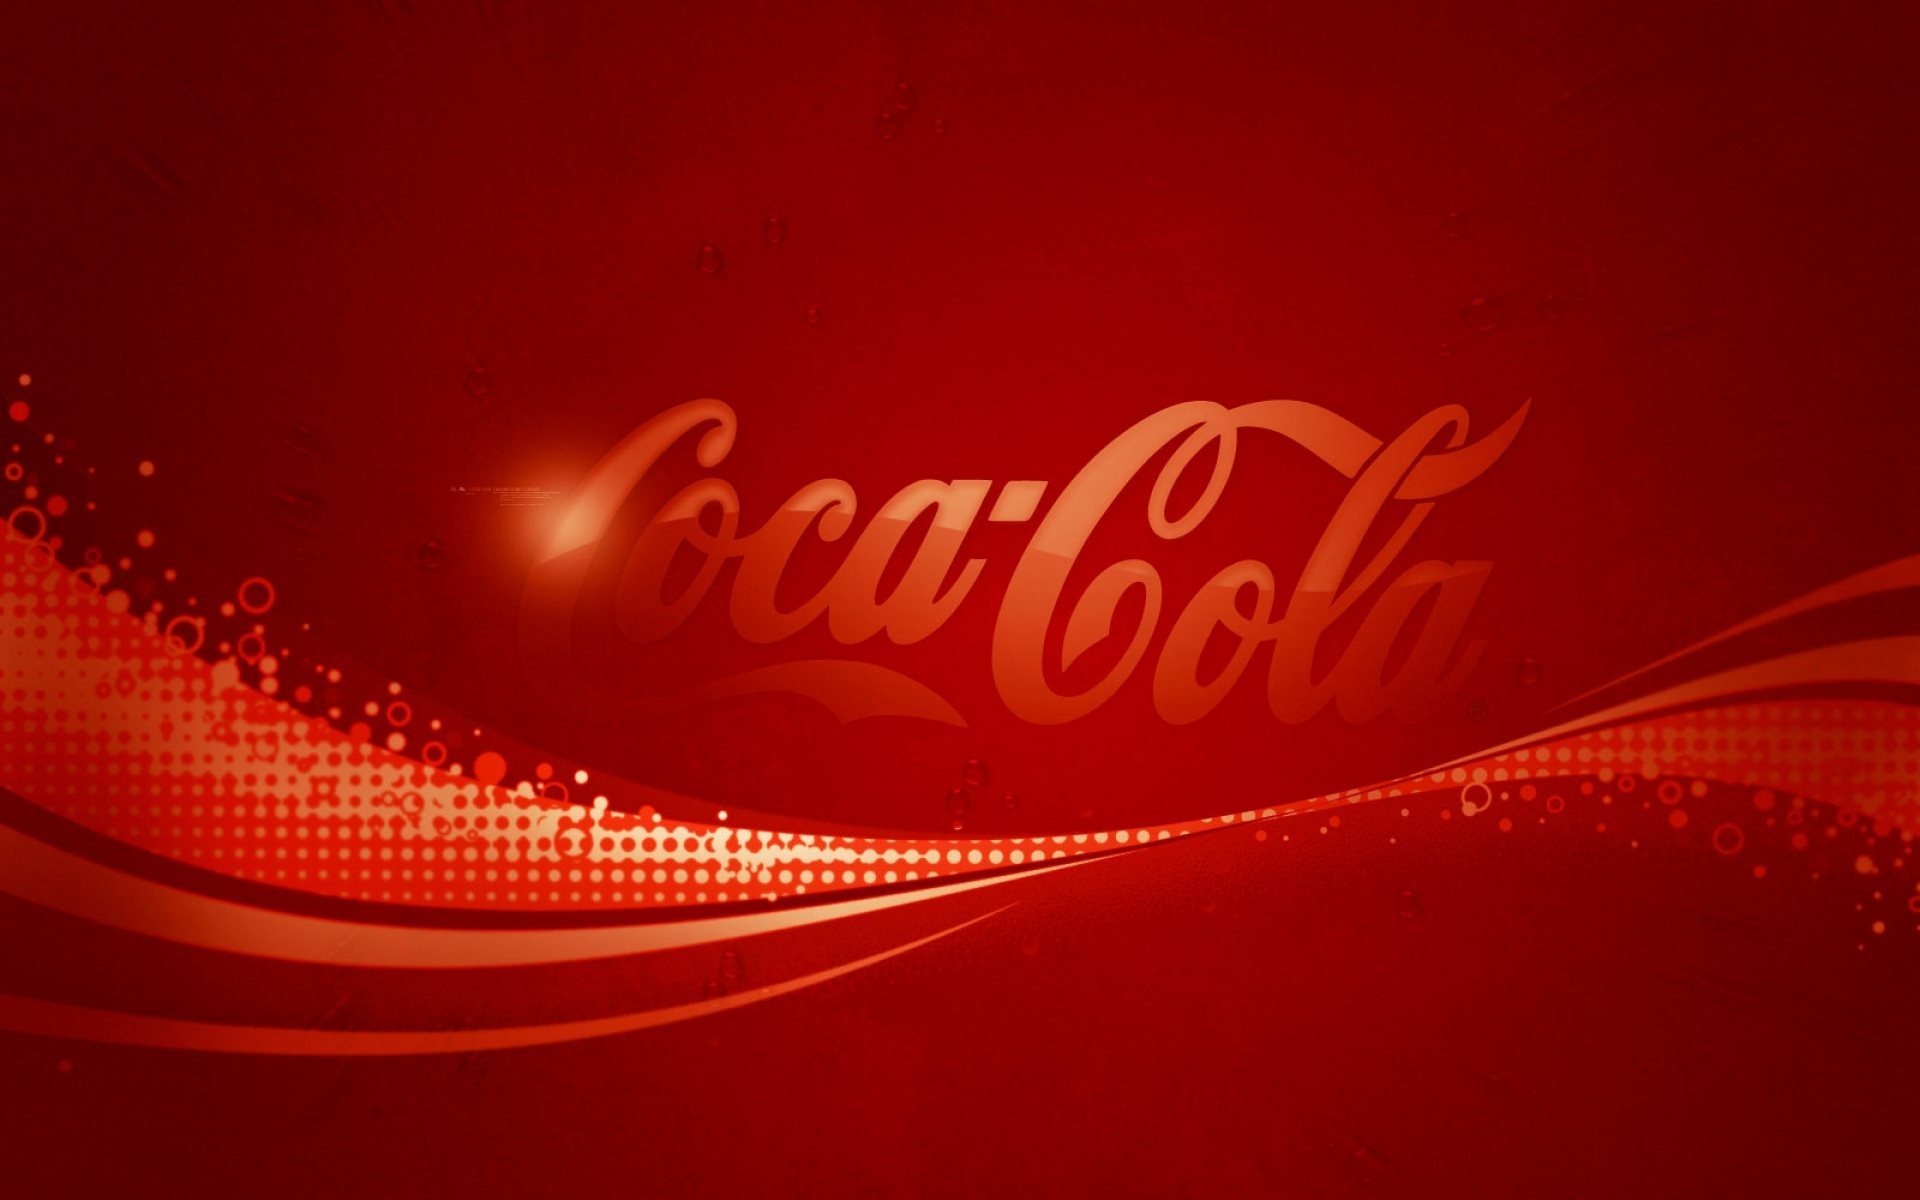 ダウンロード画像 コカ コーラ セイバー 赤の背景 画面の解像度 19x10 壁紙デスクトップ上